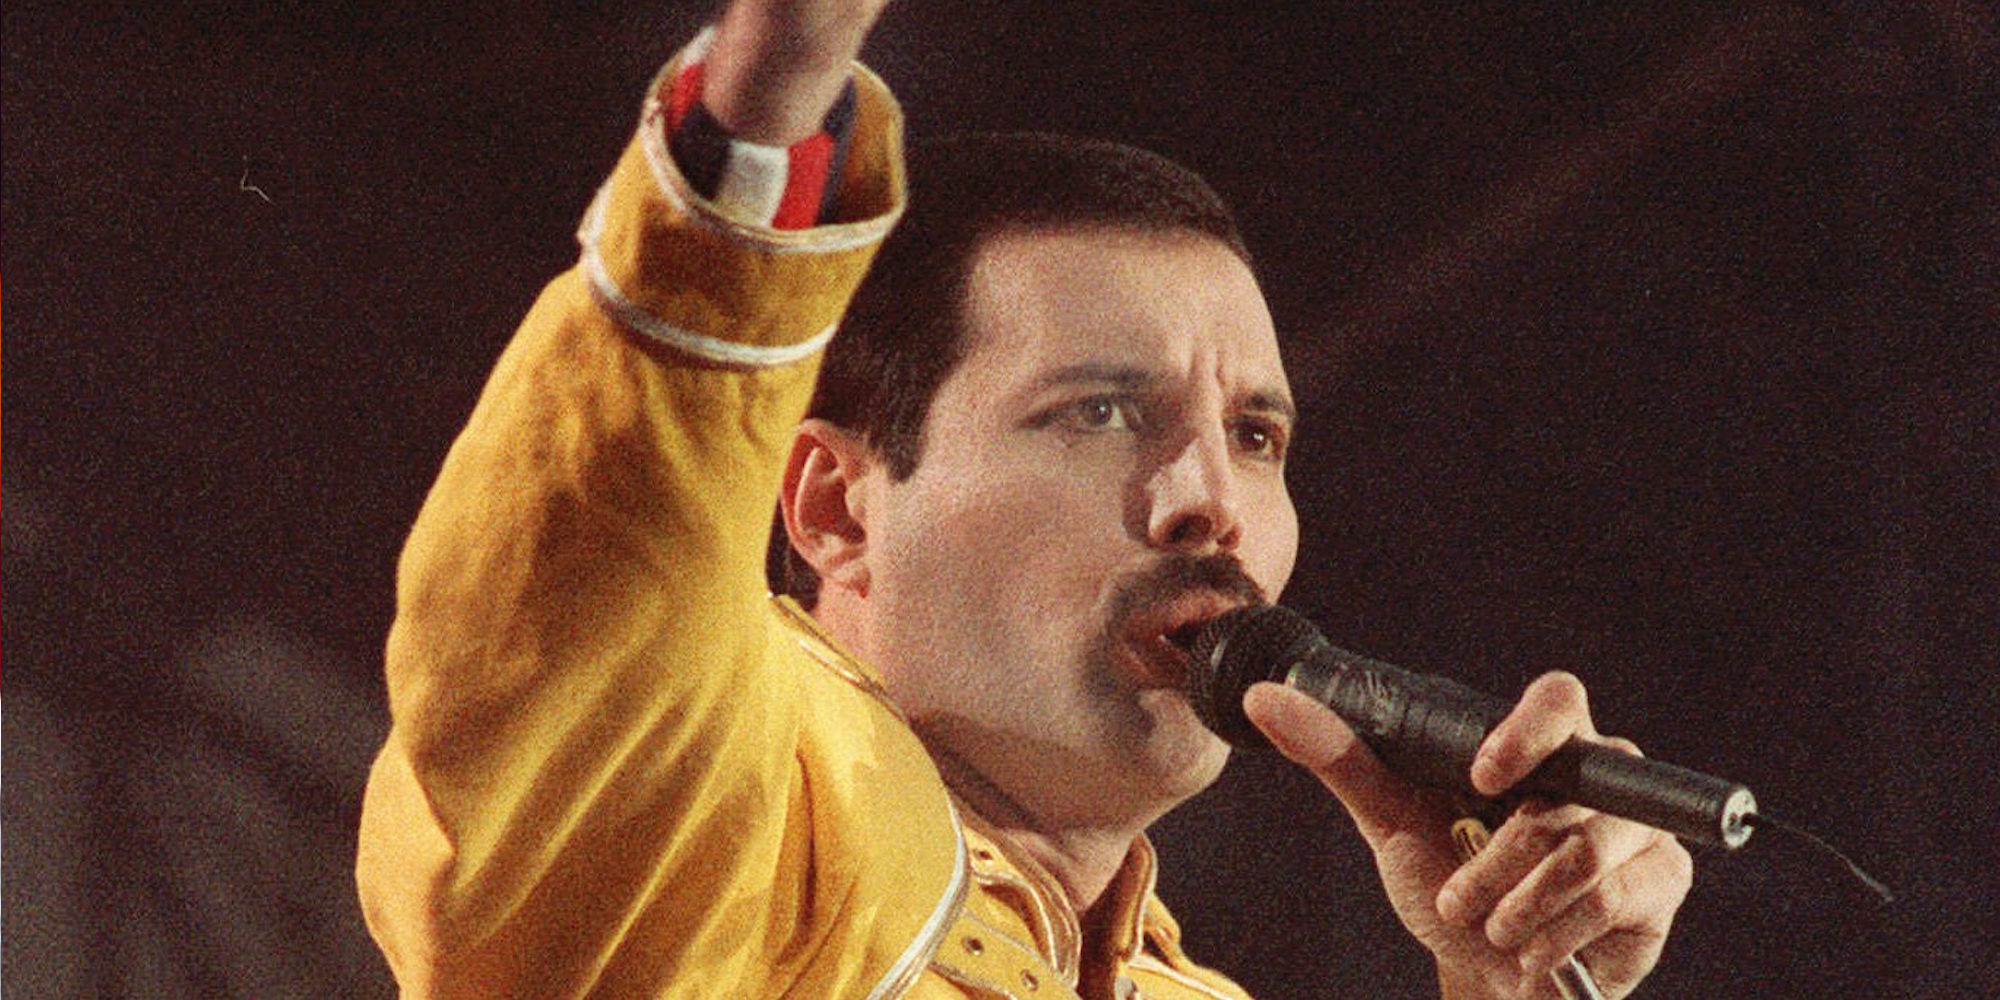 Los grandes éxitos de Freddie Mercury que nunca olvidaremos